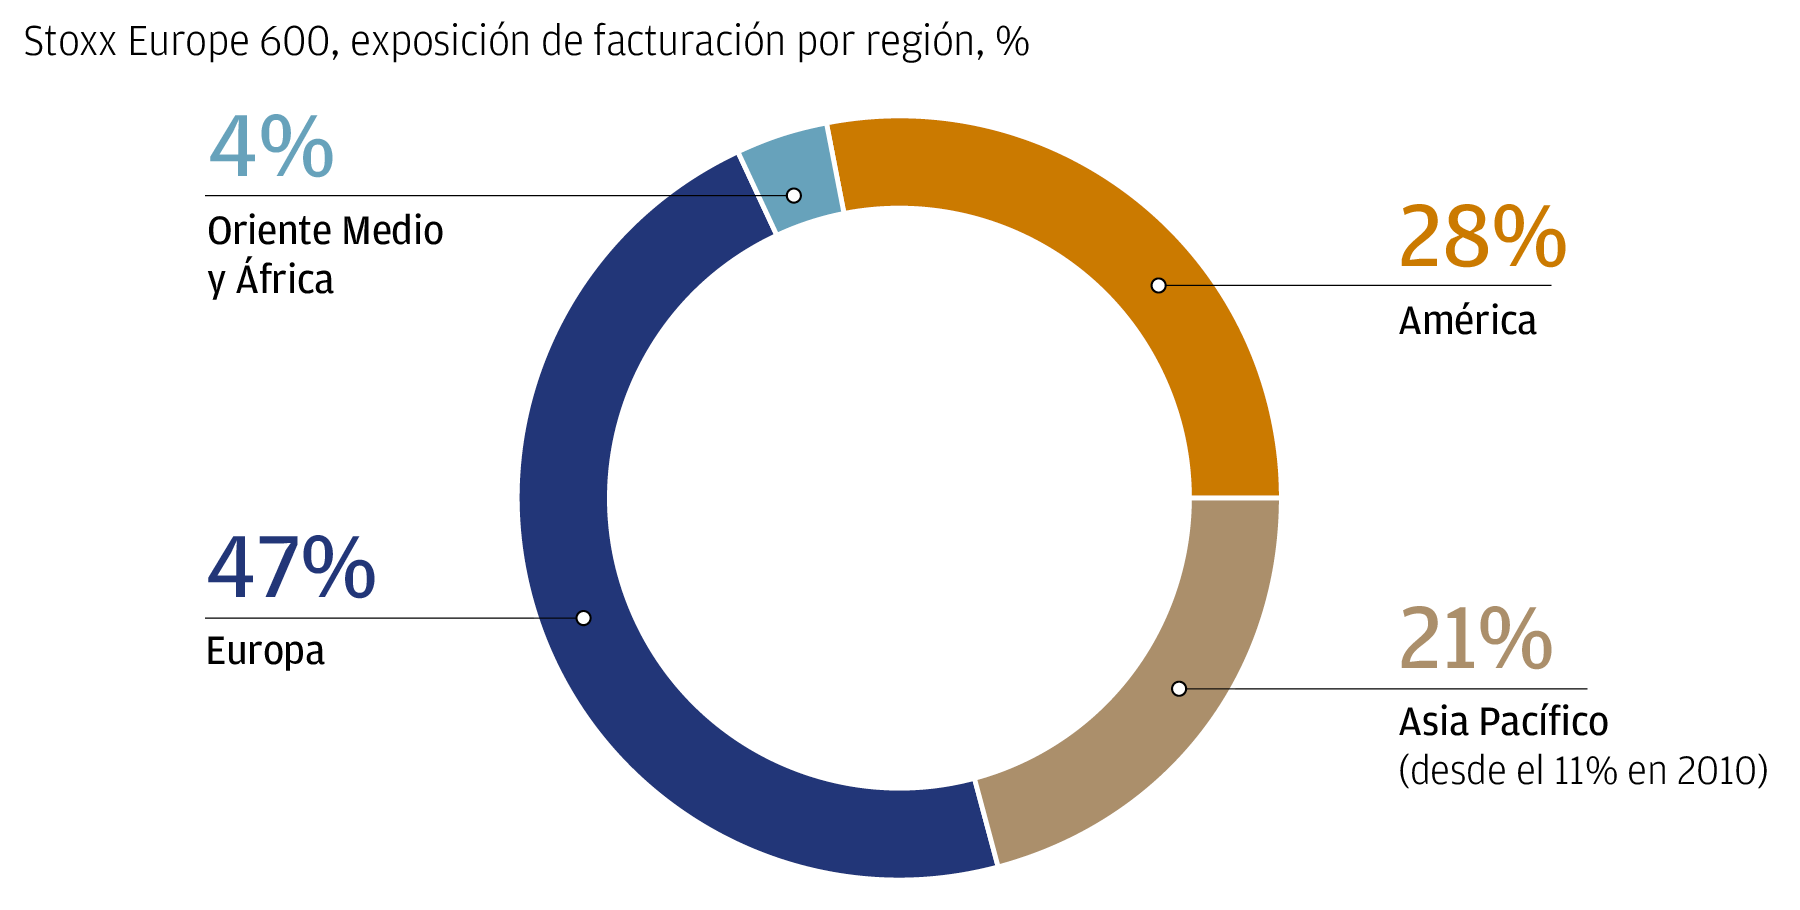 Este gráfico circular muestra la exposición de la facturación del Stoxx Europe 600 por región. 